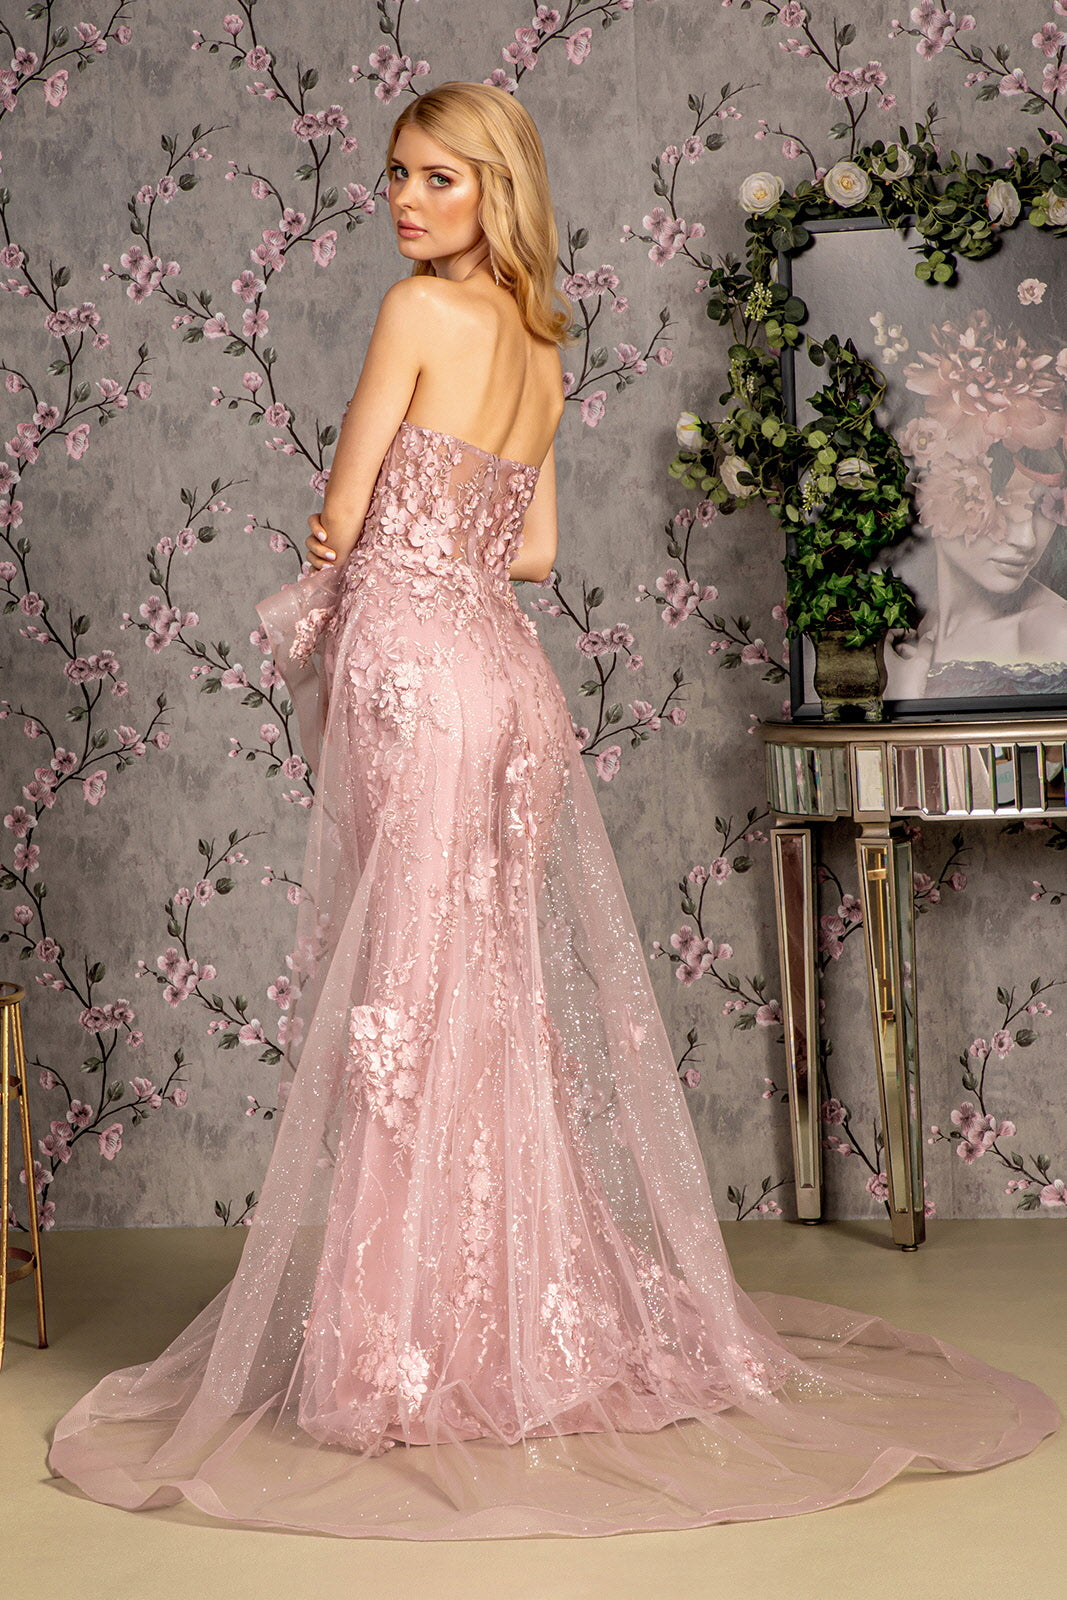 GLS BY GLORIA GL3257 Sweetheart Peplum Evening Dress